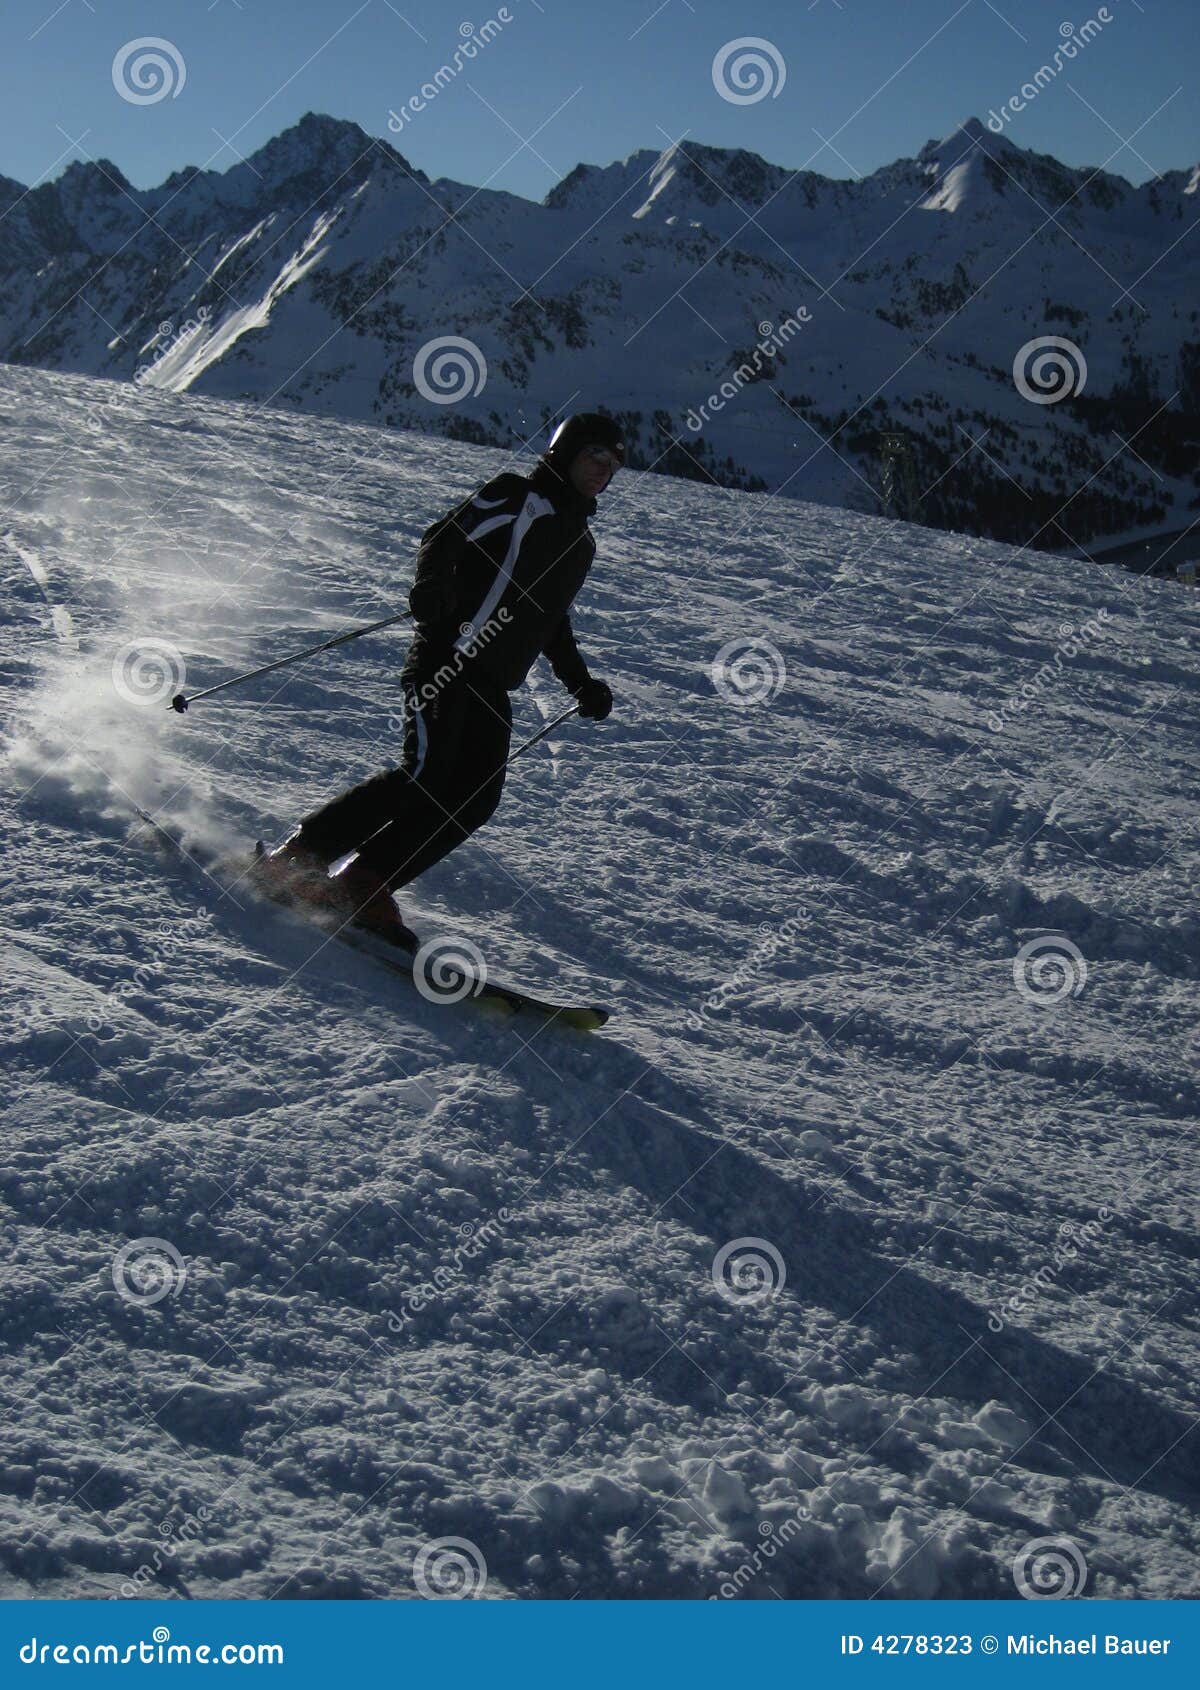 skiing in tirol / tyrol